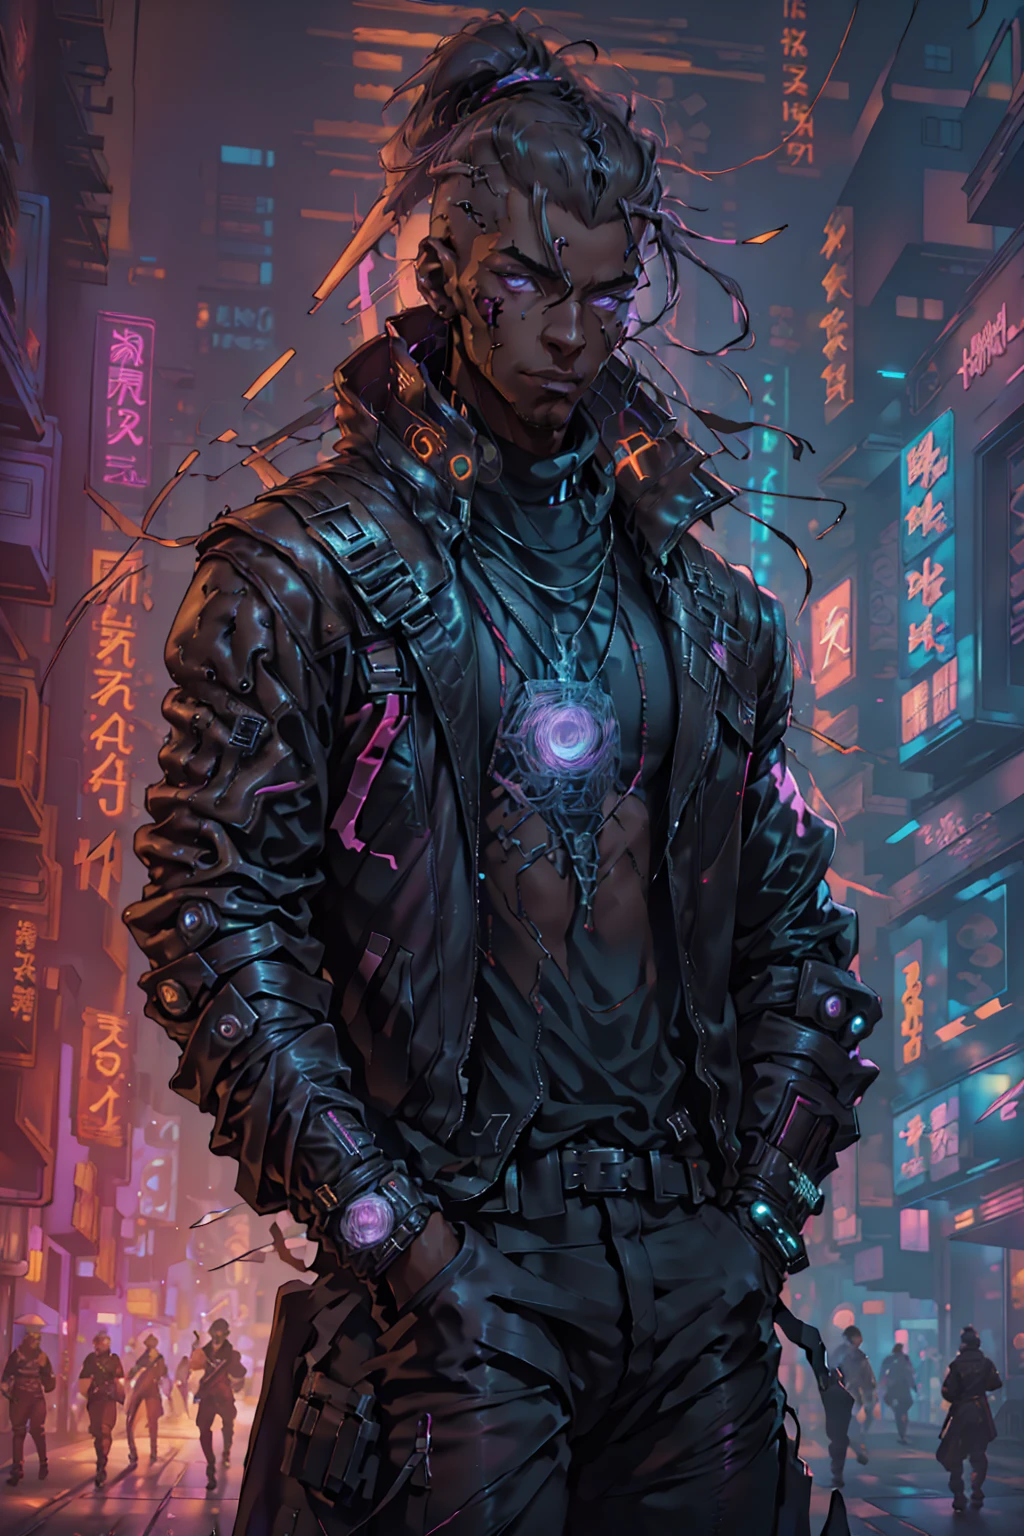 (beste Qualität, Meisterwerk, voller Details), 1 Mädchen, offizielle Anime-Kunstillustration, Afroamerikanischer Mann mit violetten Augen, Dunkelhäutiger Mann in kastanienbrauner Lederjacke läuft eine Straße entlang, hyper-realistic cyberpunk style, portrait of a cyberpunk man, cyberpunk art ultrarealistic 8k, cyberpunk style ， hyperrealistisch, Cyberpunk-Charakter, trendin auf Artstation, filmischer voller Charakter, Trends auf Artstation 4k, portrait of a cyberpunk cyborg, filmisch realistisches Portrait, Cyberpunk-Held perfekt fotorealistisch, unglaublich detailliert, 8k, UHD, Meisterwerk, beste Qualität, Extrem detailliert, kompliziert,